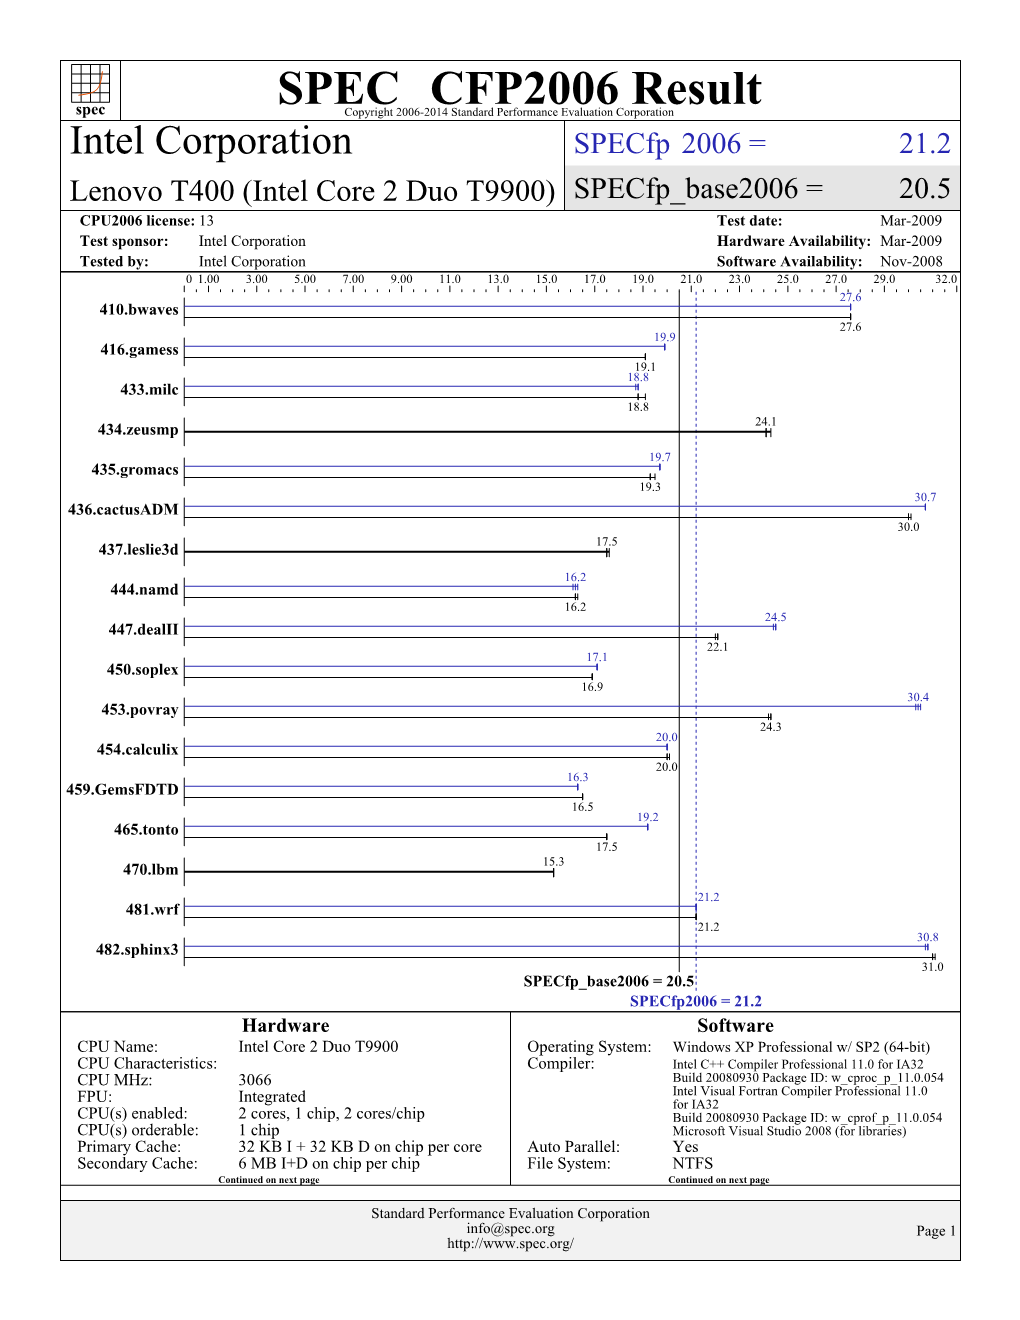 Intel Corporation: Lenovo T400 (Intel Core 2 Duo T9900)